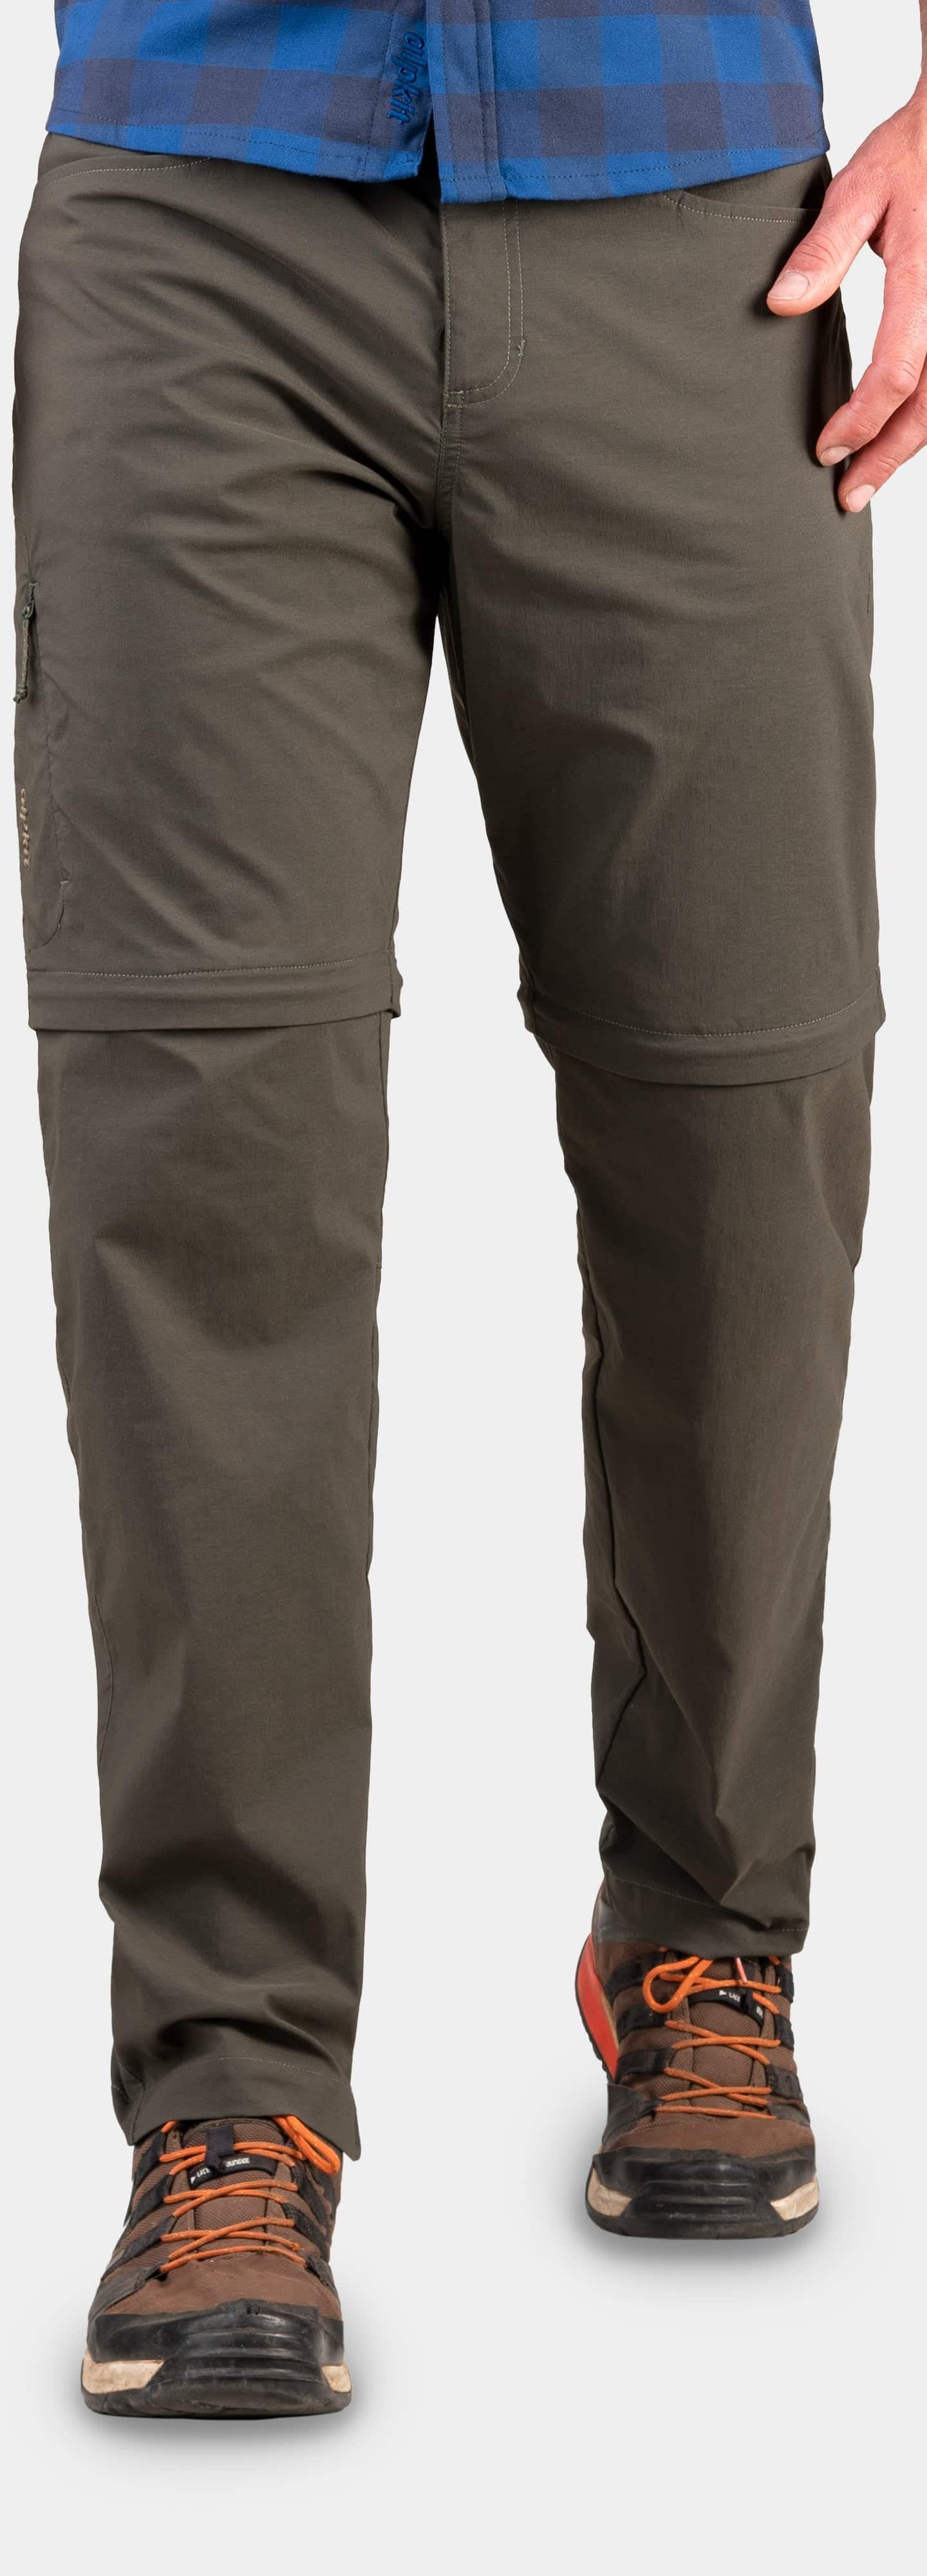 Philadelphia spade Hervat Teleki Zip | Men's Zip-Off Walking Trousers